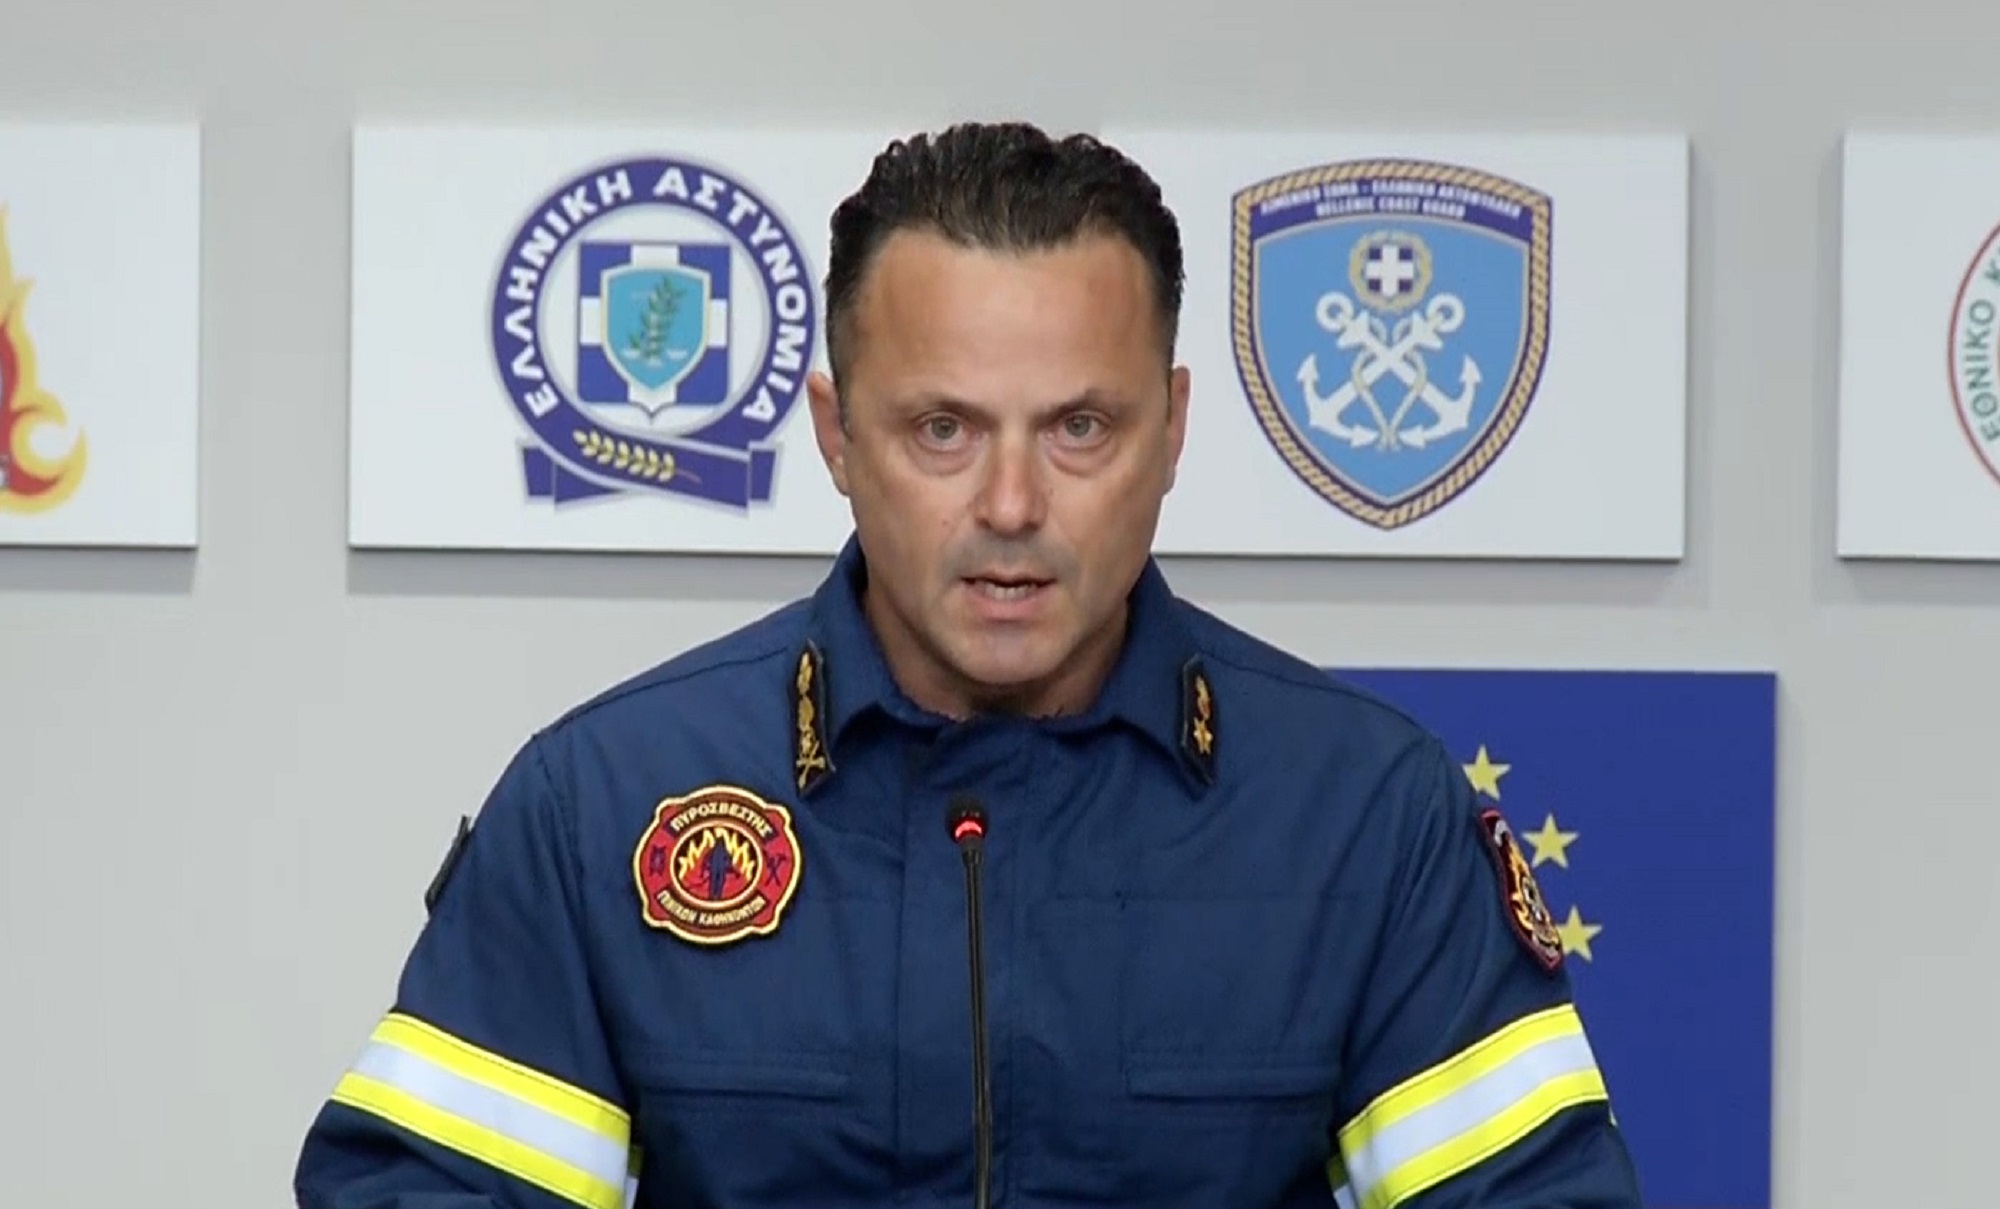 Εκπρόσωπος Πυροσβεστικής: «Το διασωστικό έργο δεν έχει τελειώσει θα συνεχιστεί μέχρι να απεγκλωβιστούν άπαντες»